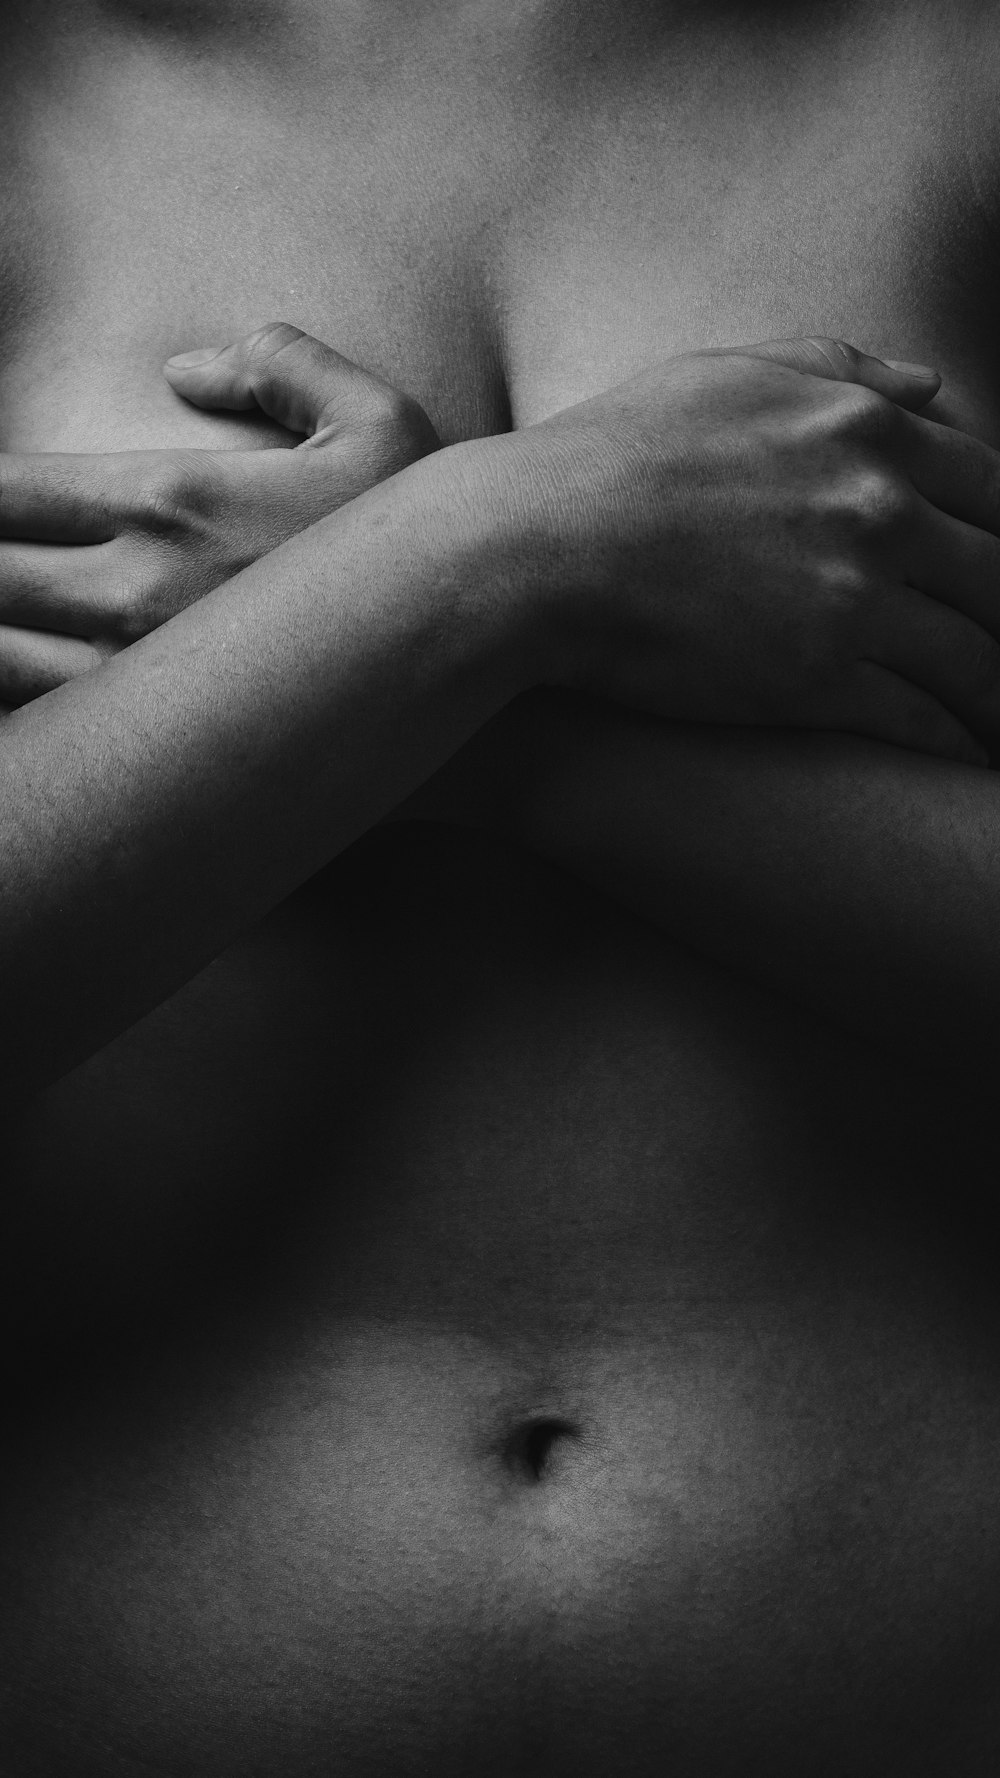 Foto in scala di grigi di donna che si copre il seno usando entrambe le mani